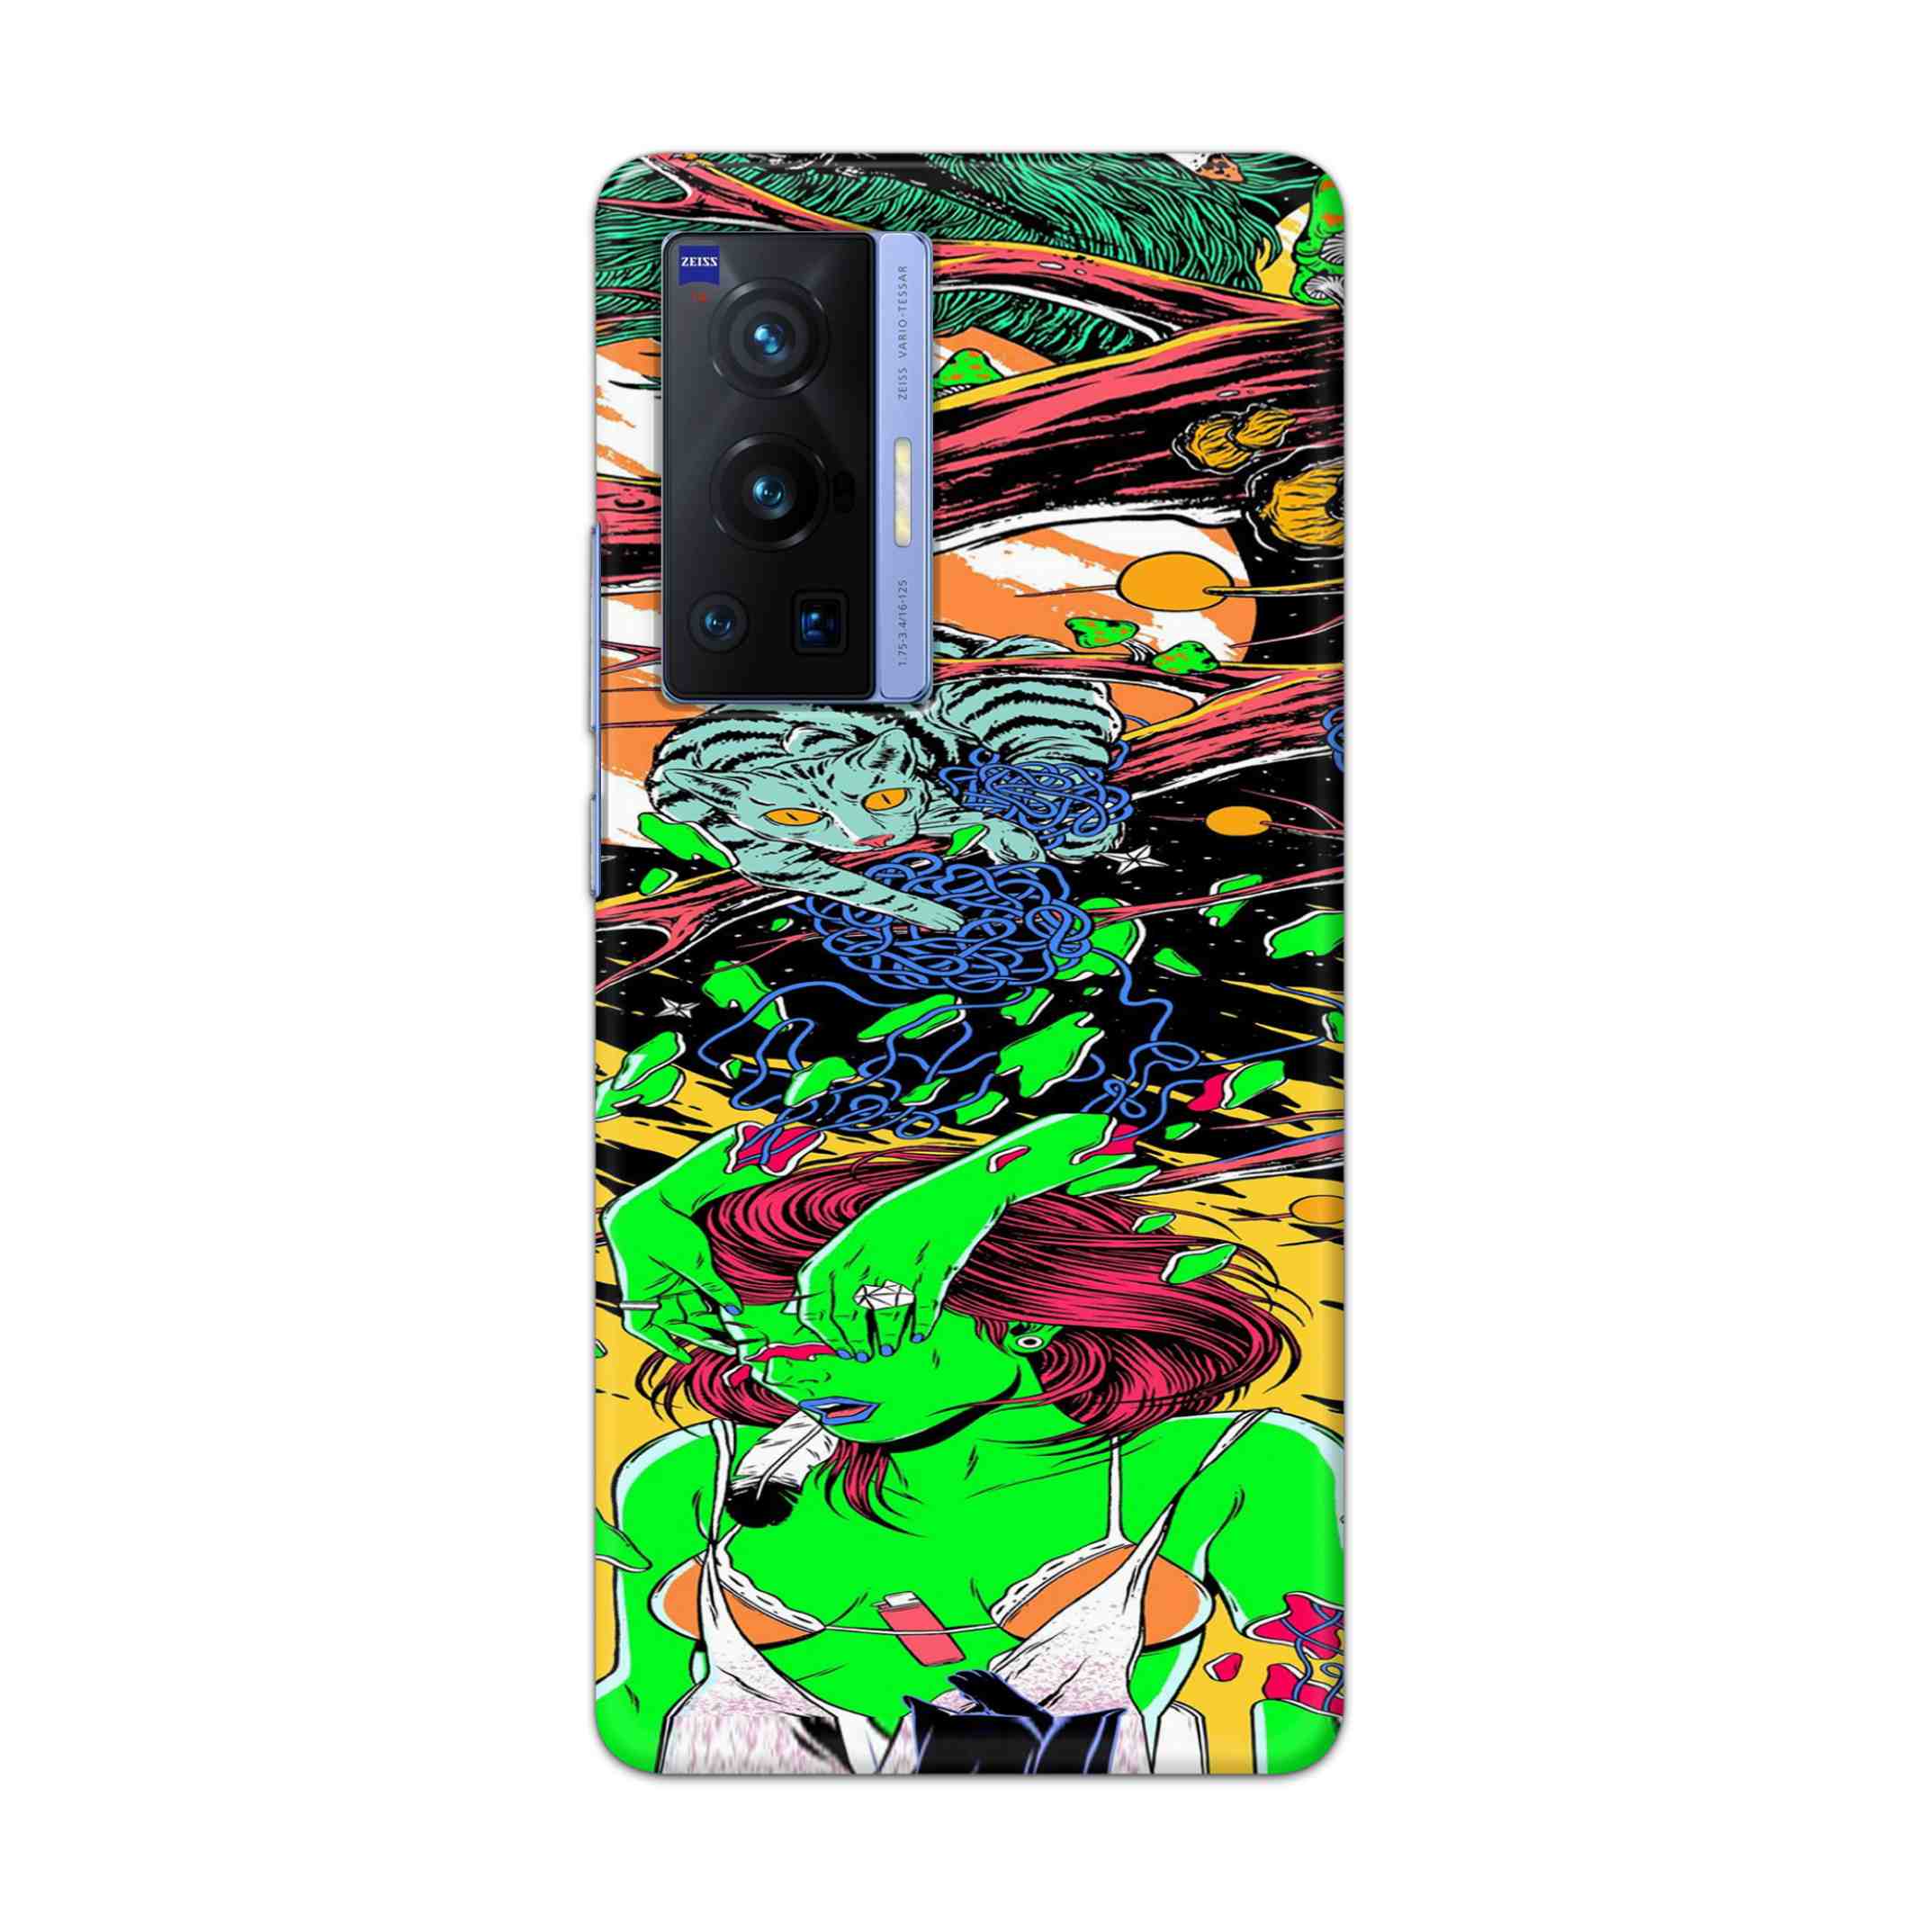 Buy Green Girl Art Hard Back Mobile Phone Case Cover For Vivo X70 Pro Online